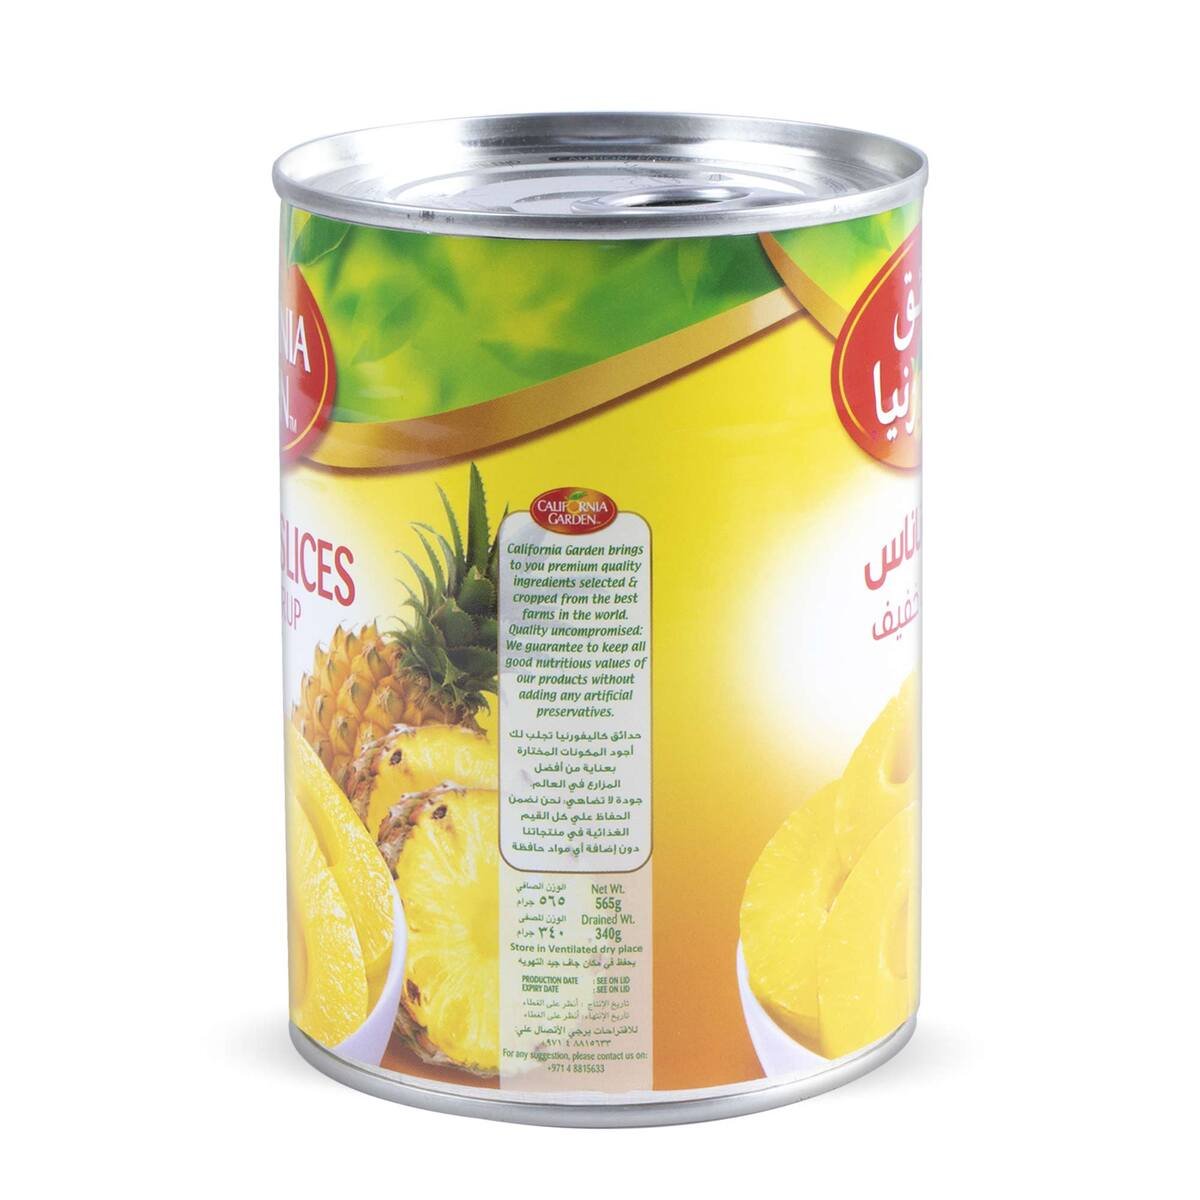 California Garden Pineapple Slice in Light Syrup 565 g